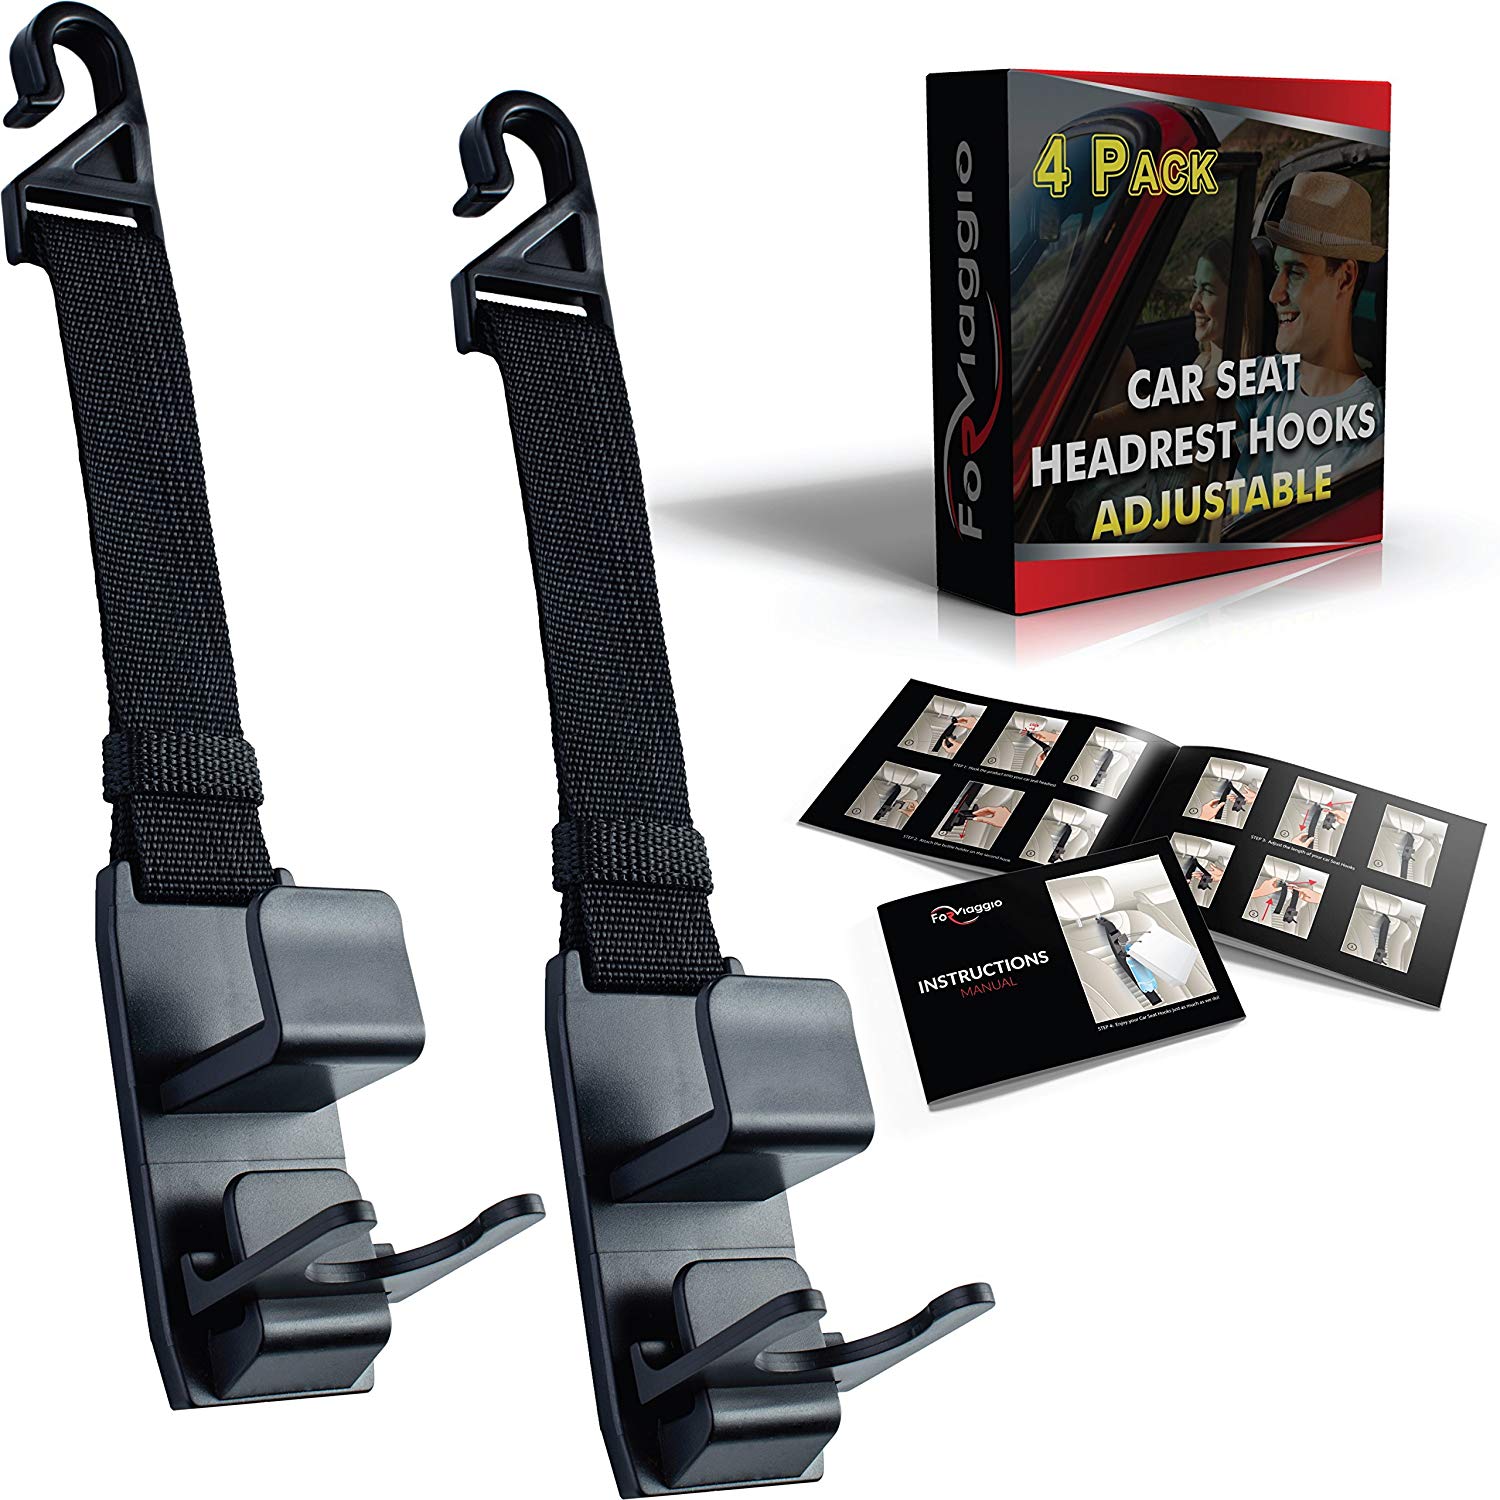 Headrest Hooks for Car | Strong Purse, Handbag, Coat Hanger Holder Hooks with Adjustable Headrest Hook Strap for Storage and Organization (4 Pack) + Bottle Holders